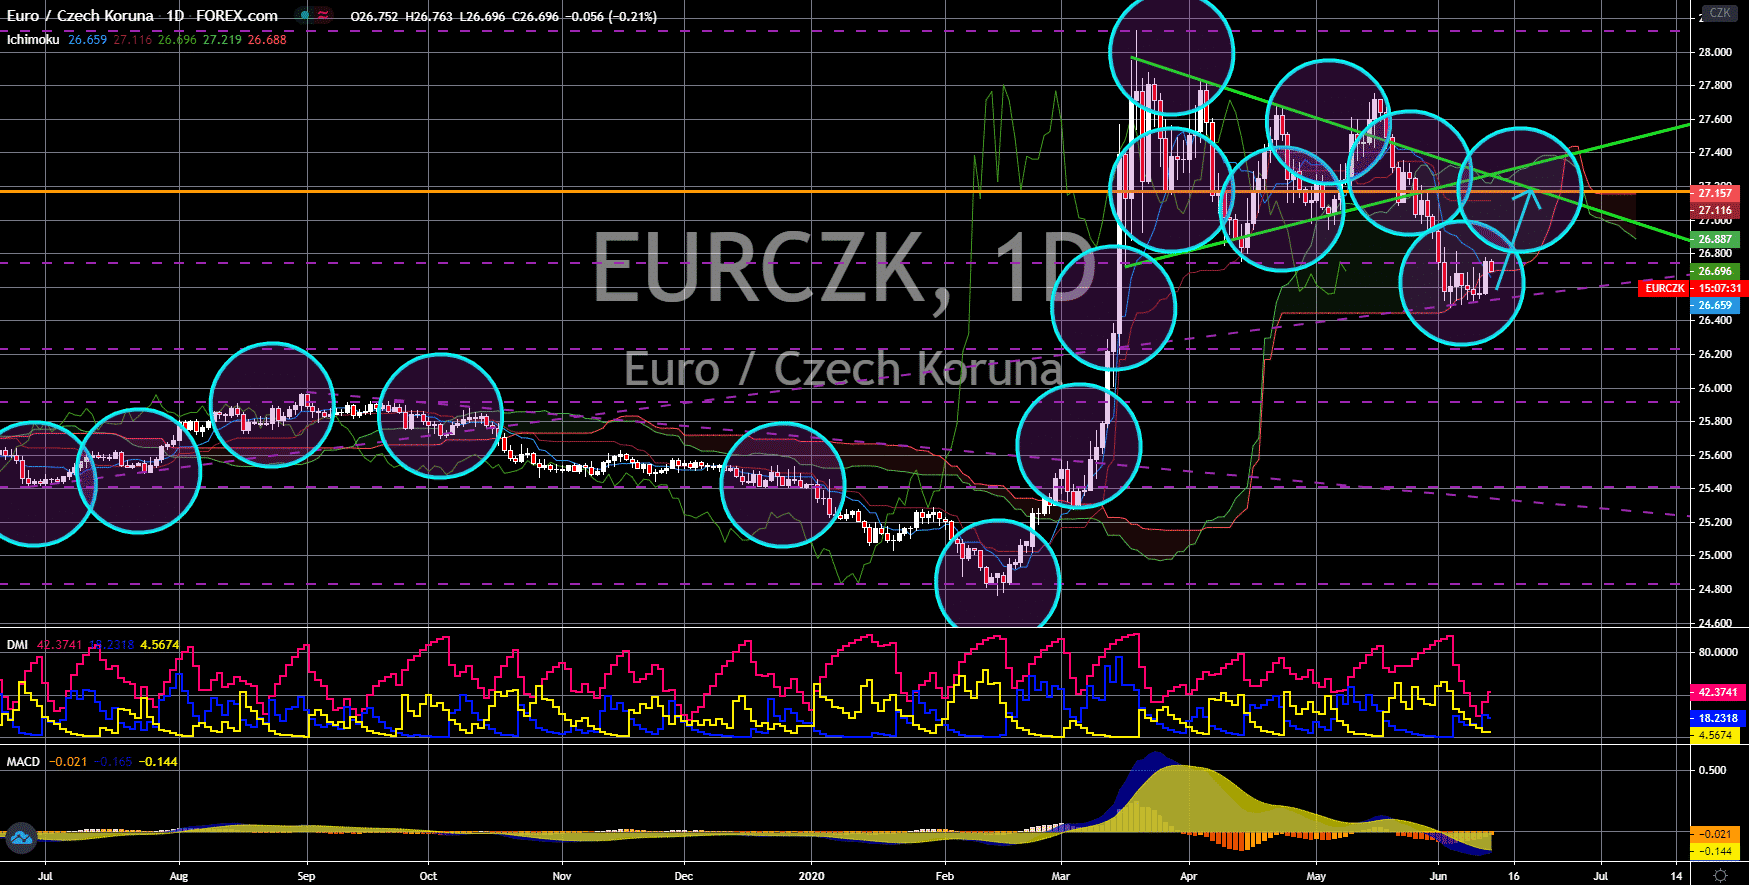 FinanceBrokerage - Notícias do Mercado: Gráfico EUR/CZK